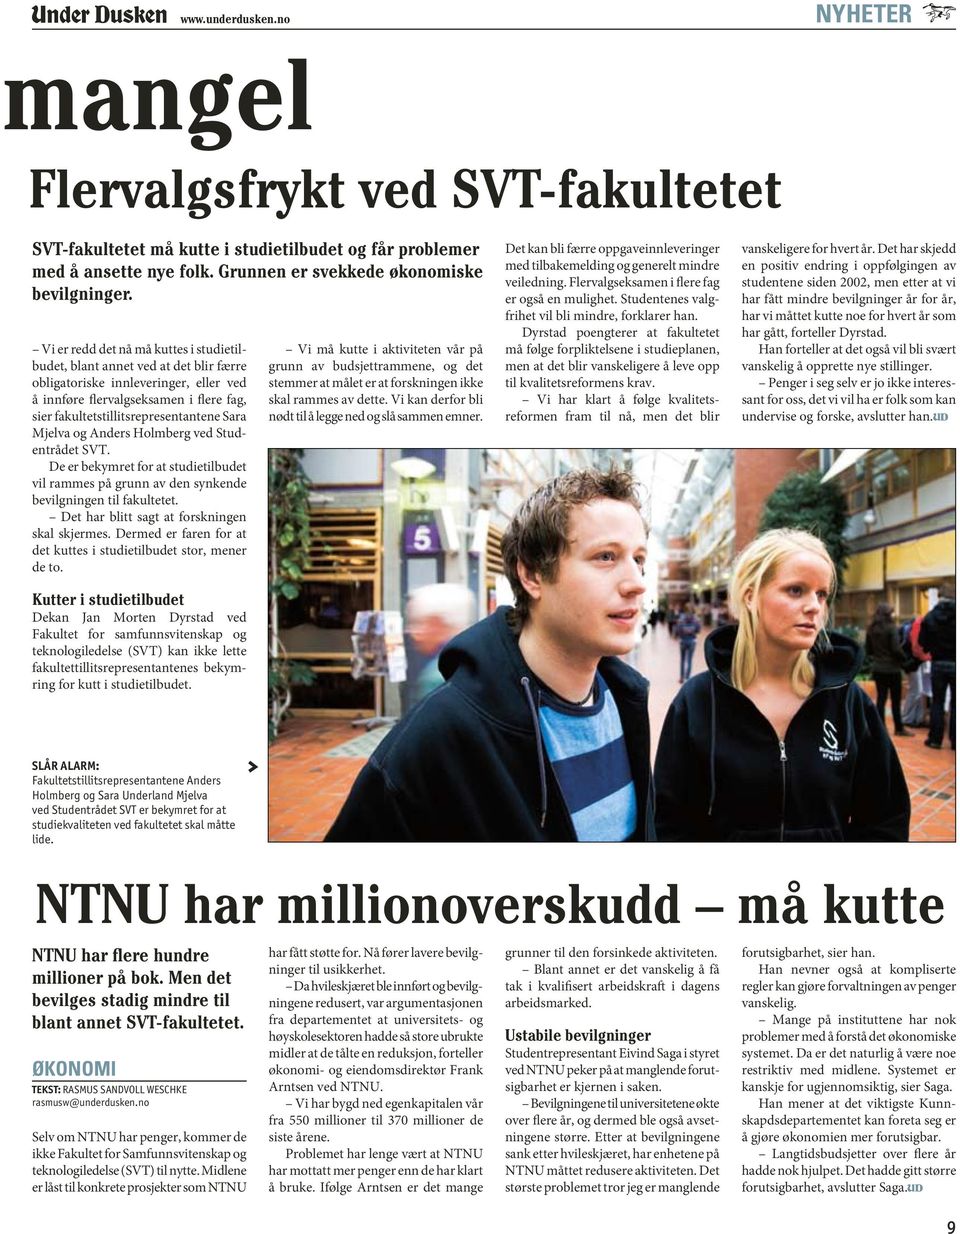 Sara Mjelva og Anders Holmberg ved Studentrådet SVT. De er bekymret for at studietilbudet vil rammes på grunn av den synkende bevilgningen til fakultetet.